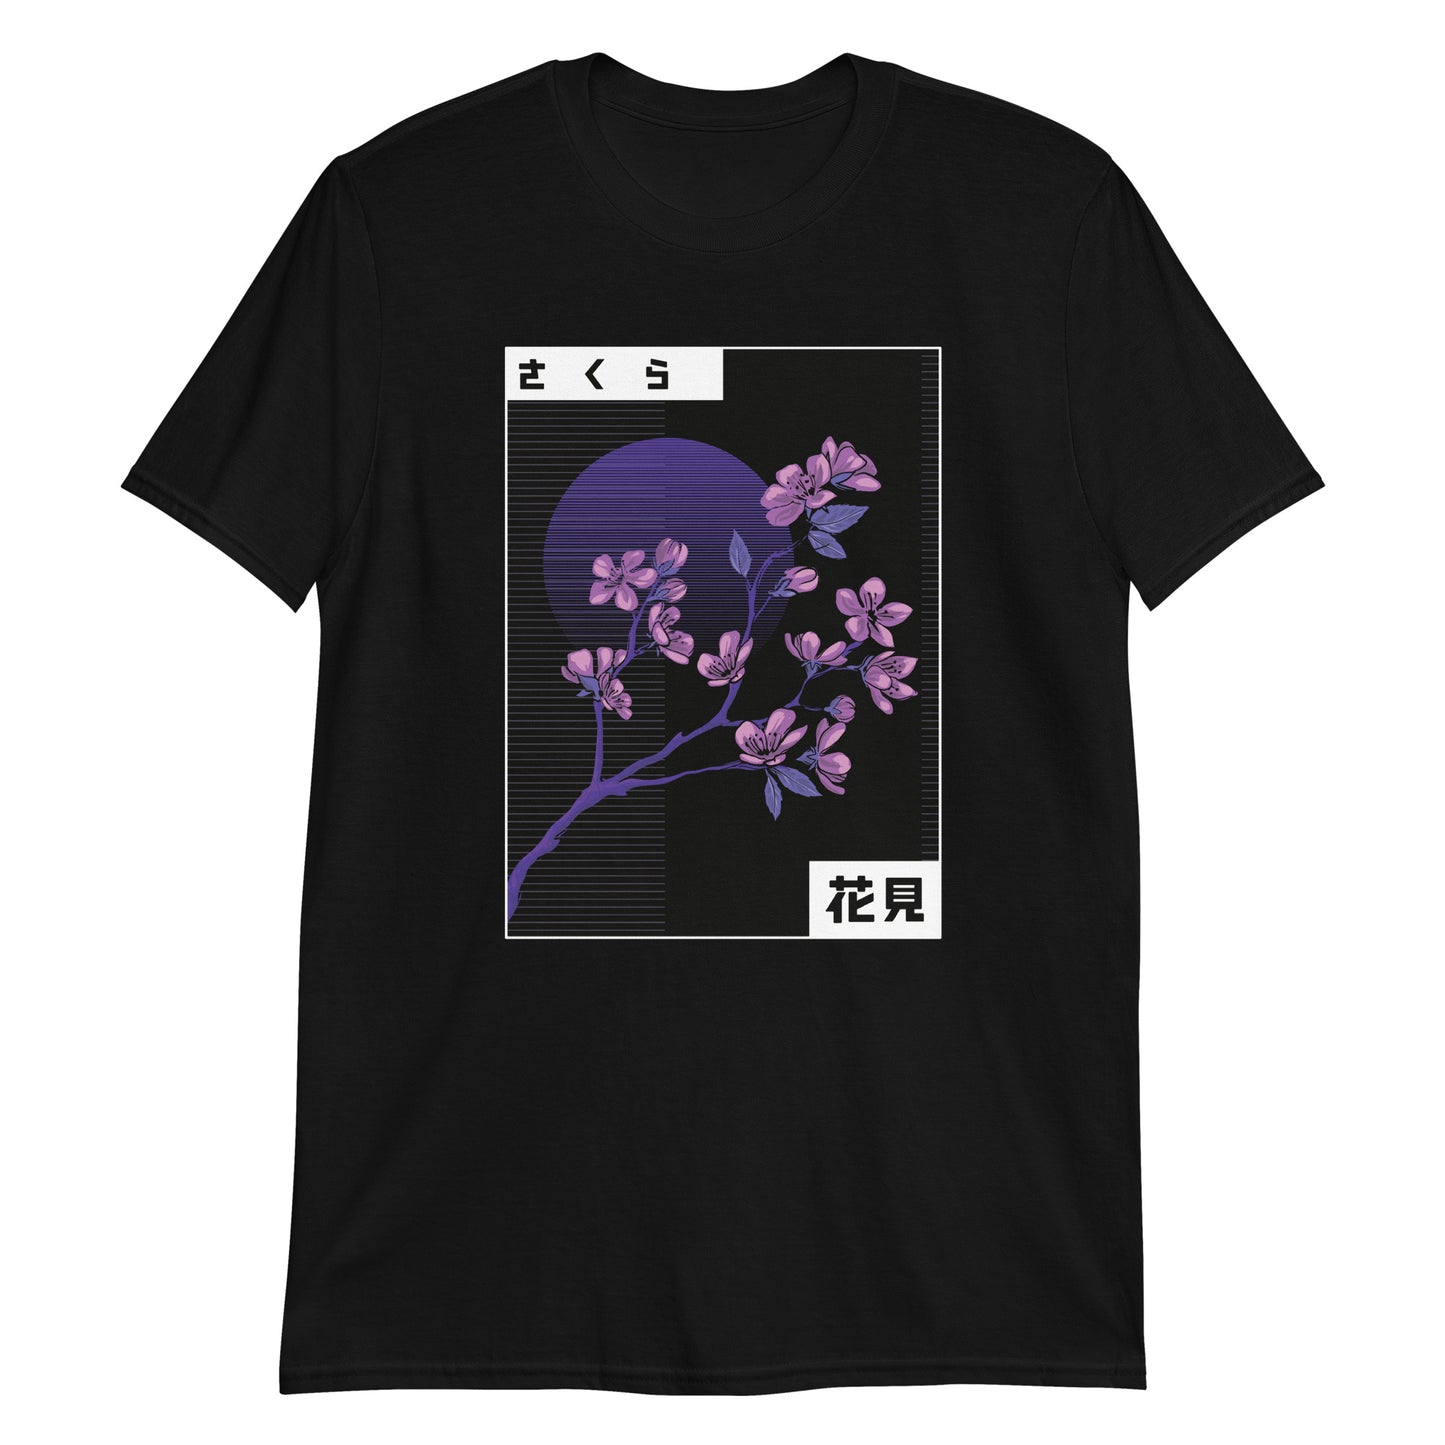 Indie Japanese Art, Japan Streeetwear Retro, Japanese Aesthetic T-Shirt